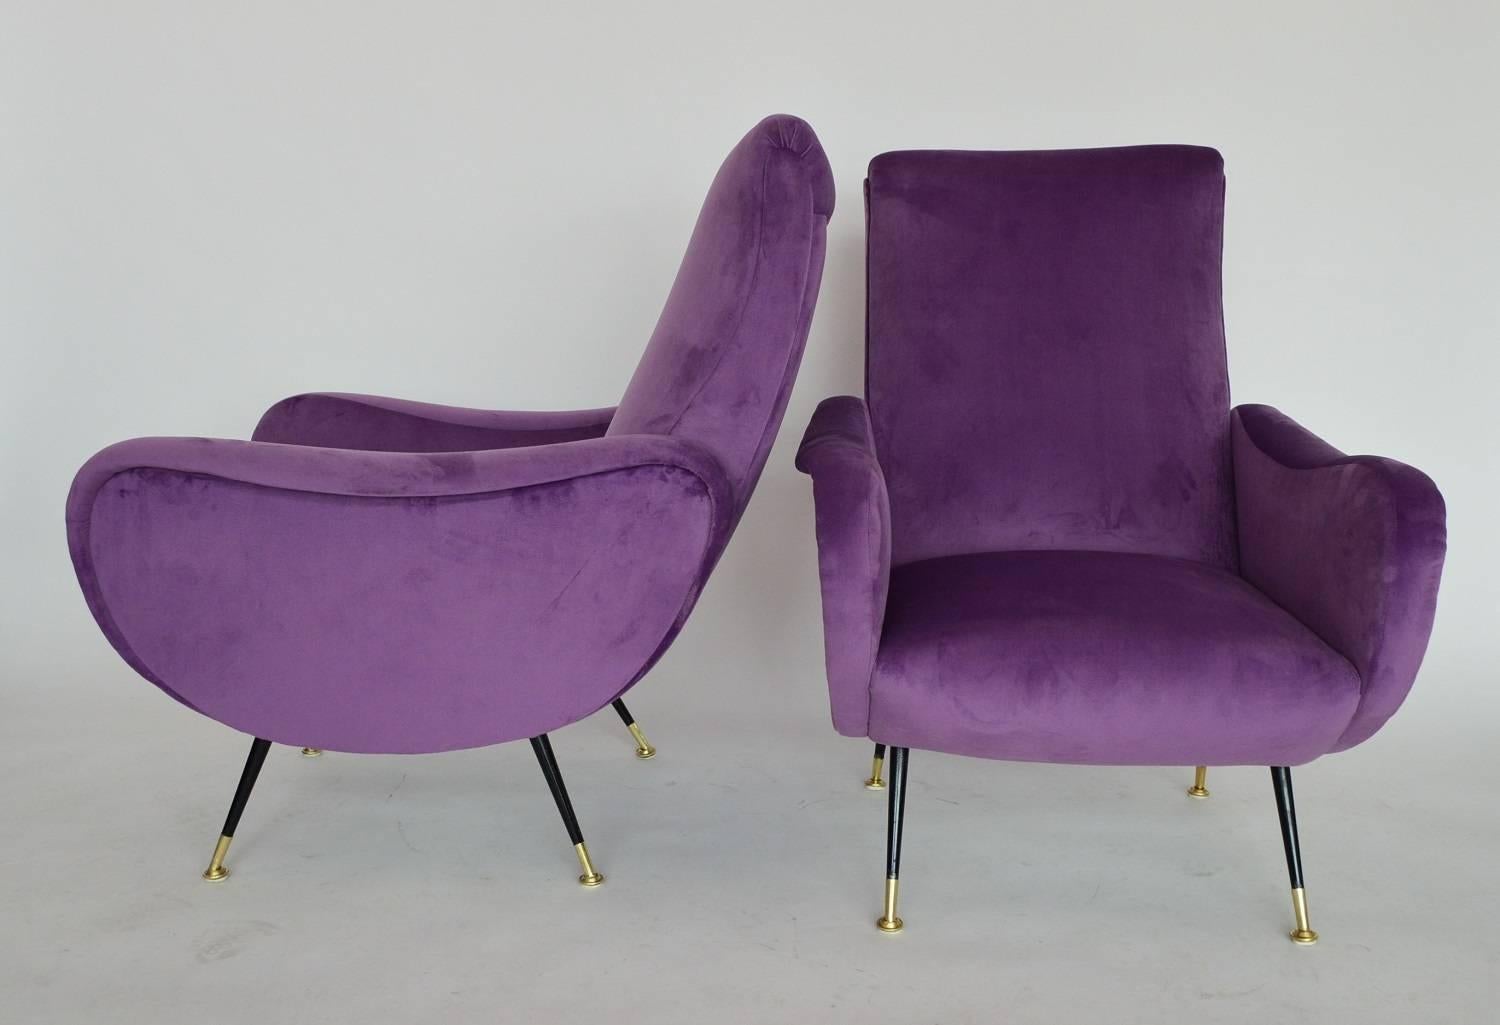 Mid-20th Century Italian Armchairs Restored with Light Purple Velvet, 1950s